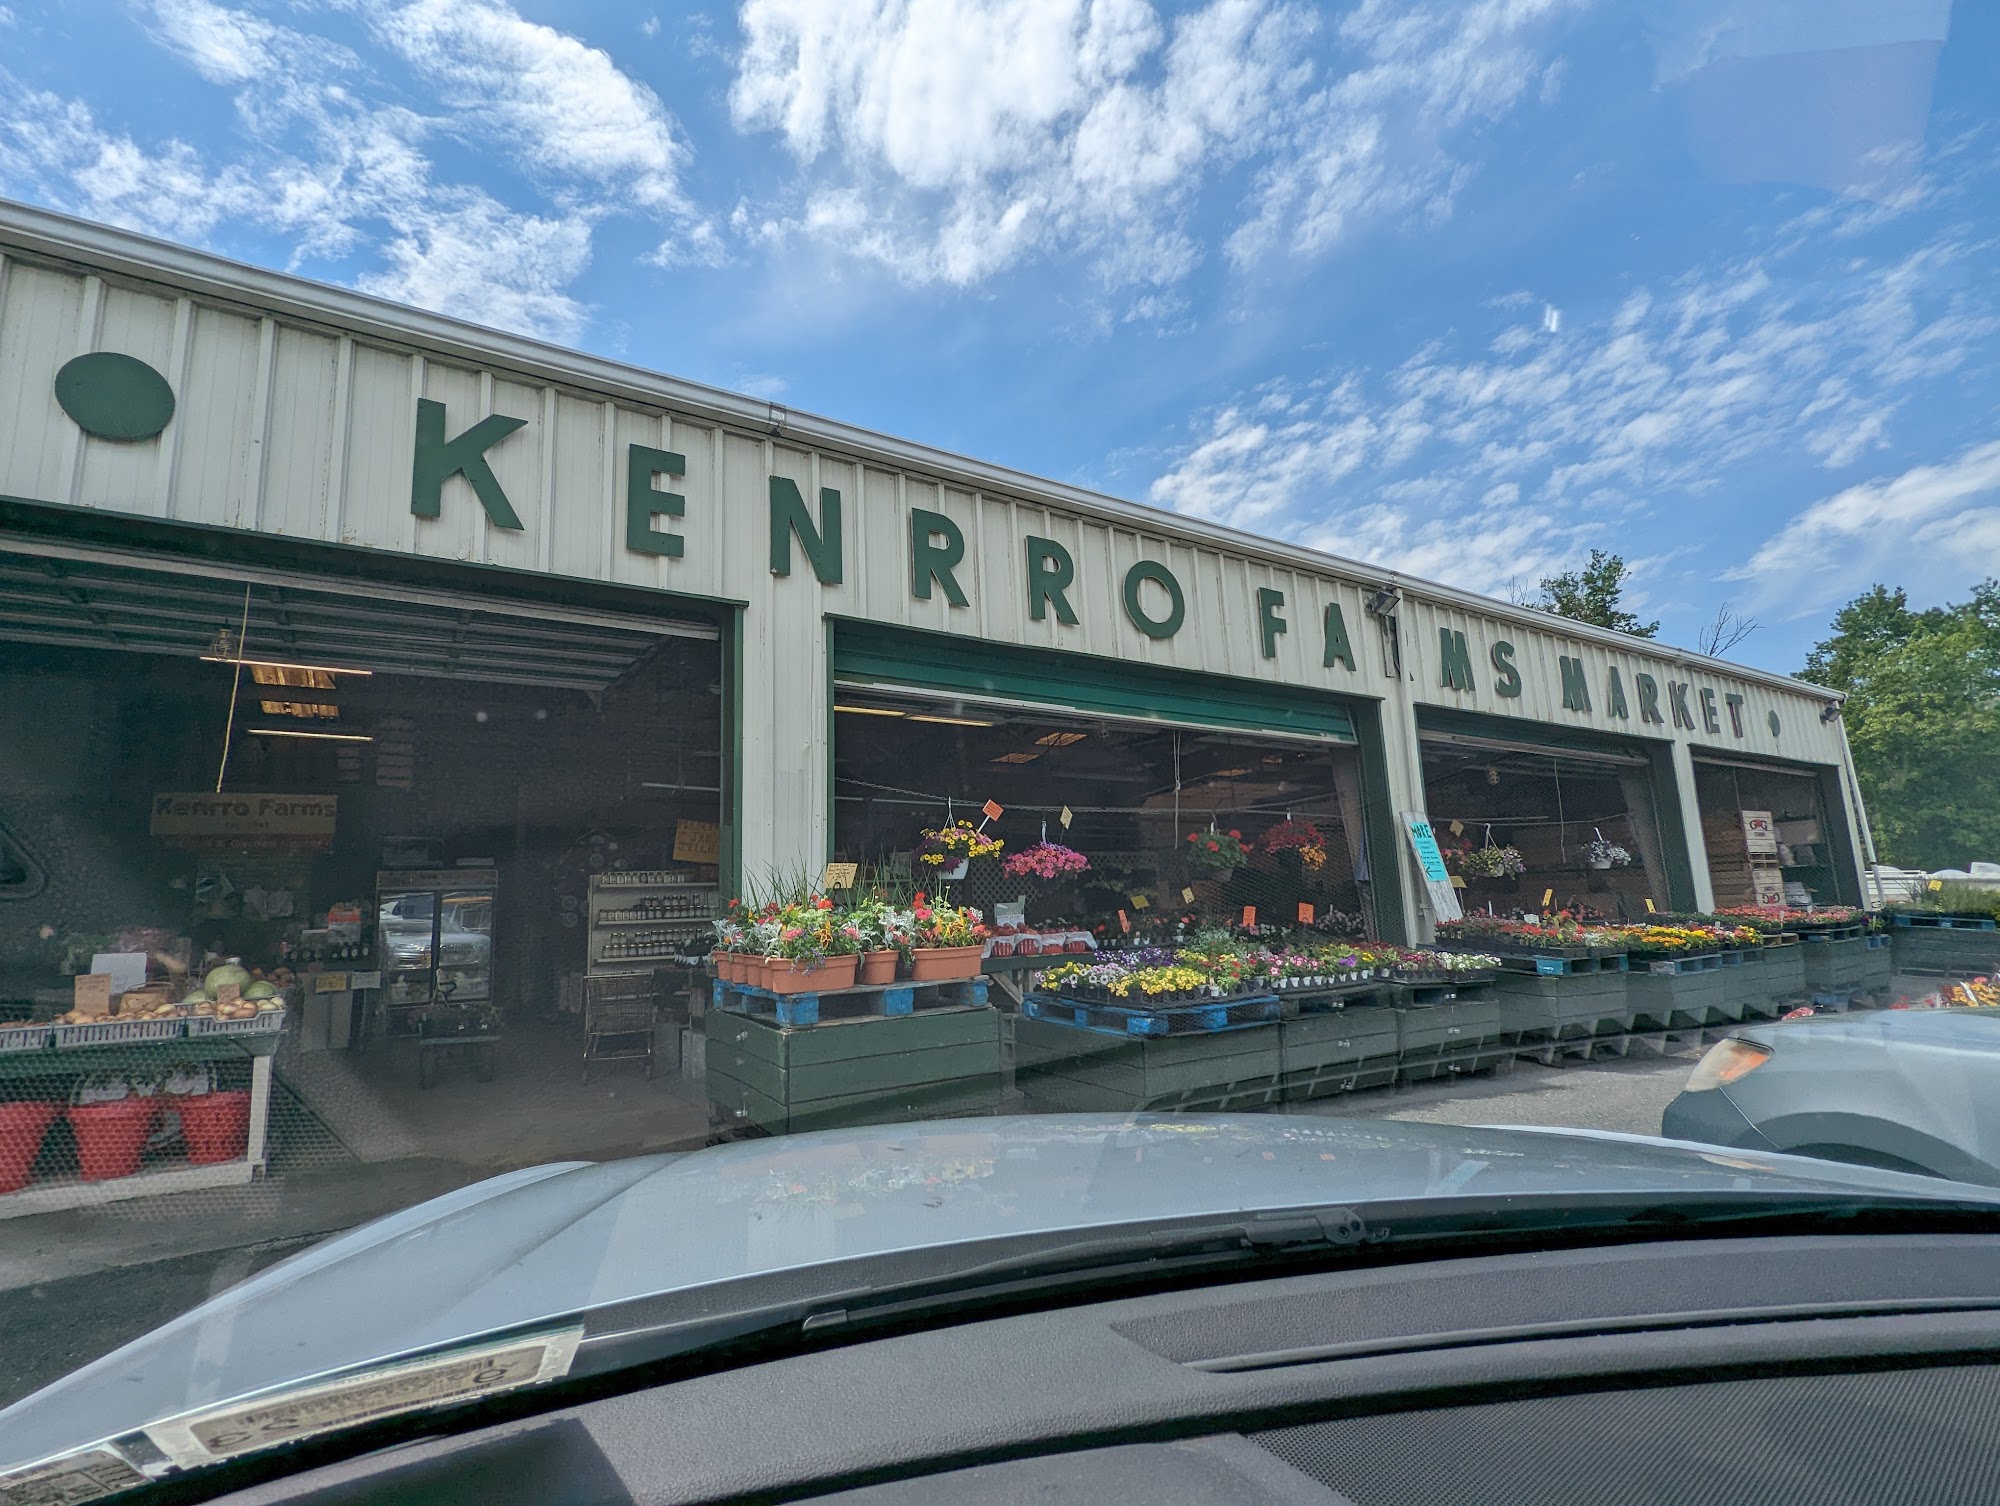 Kenrro Farms Market & Garden